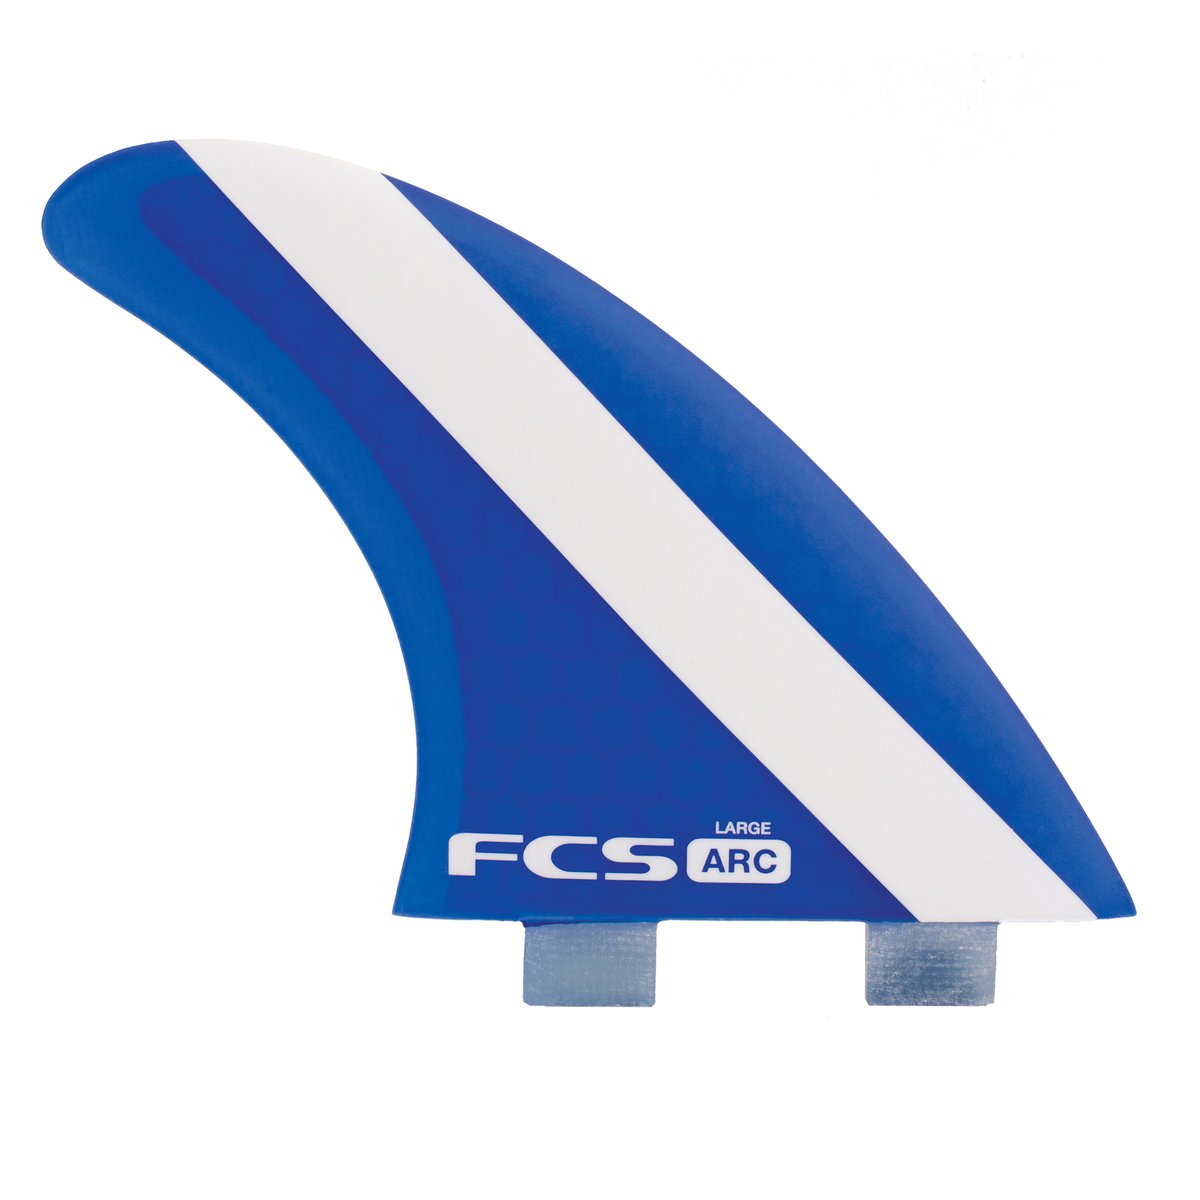 FCS 1 ARC PC TRI-FIN SET